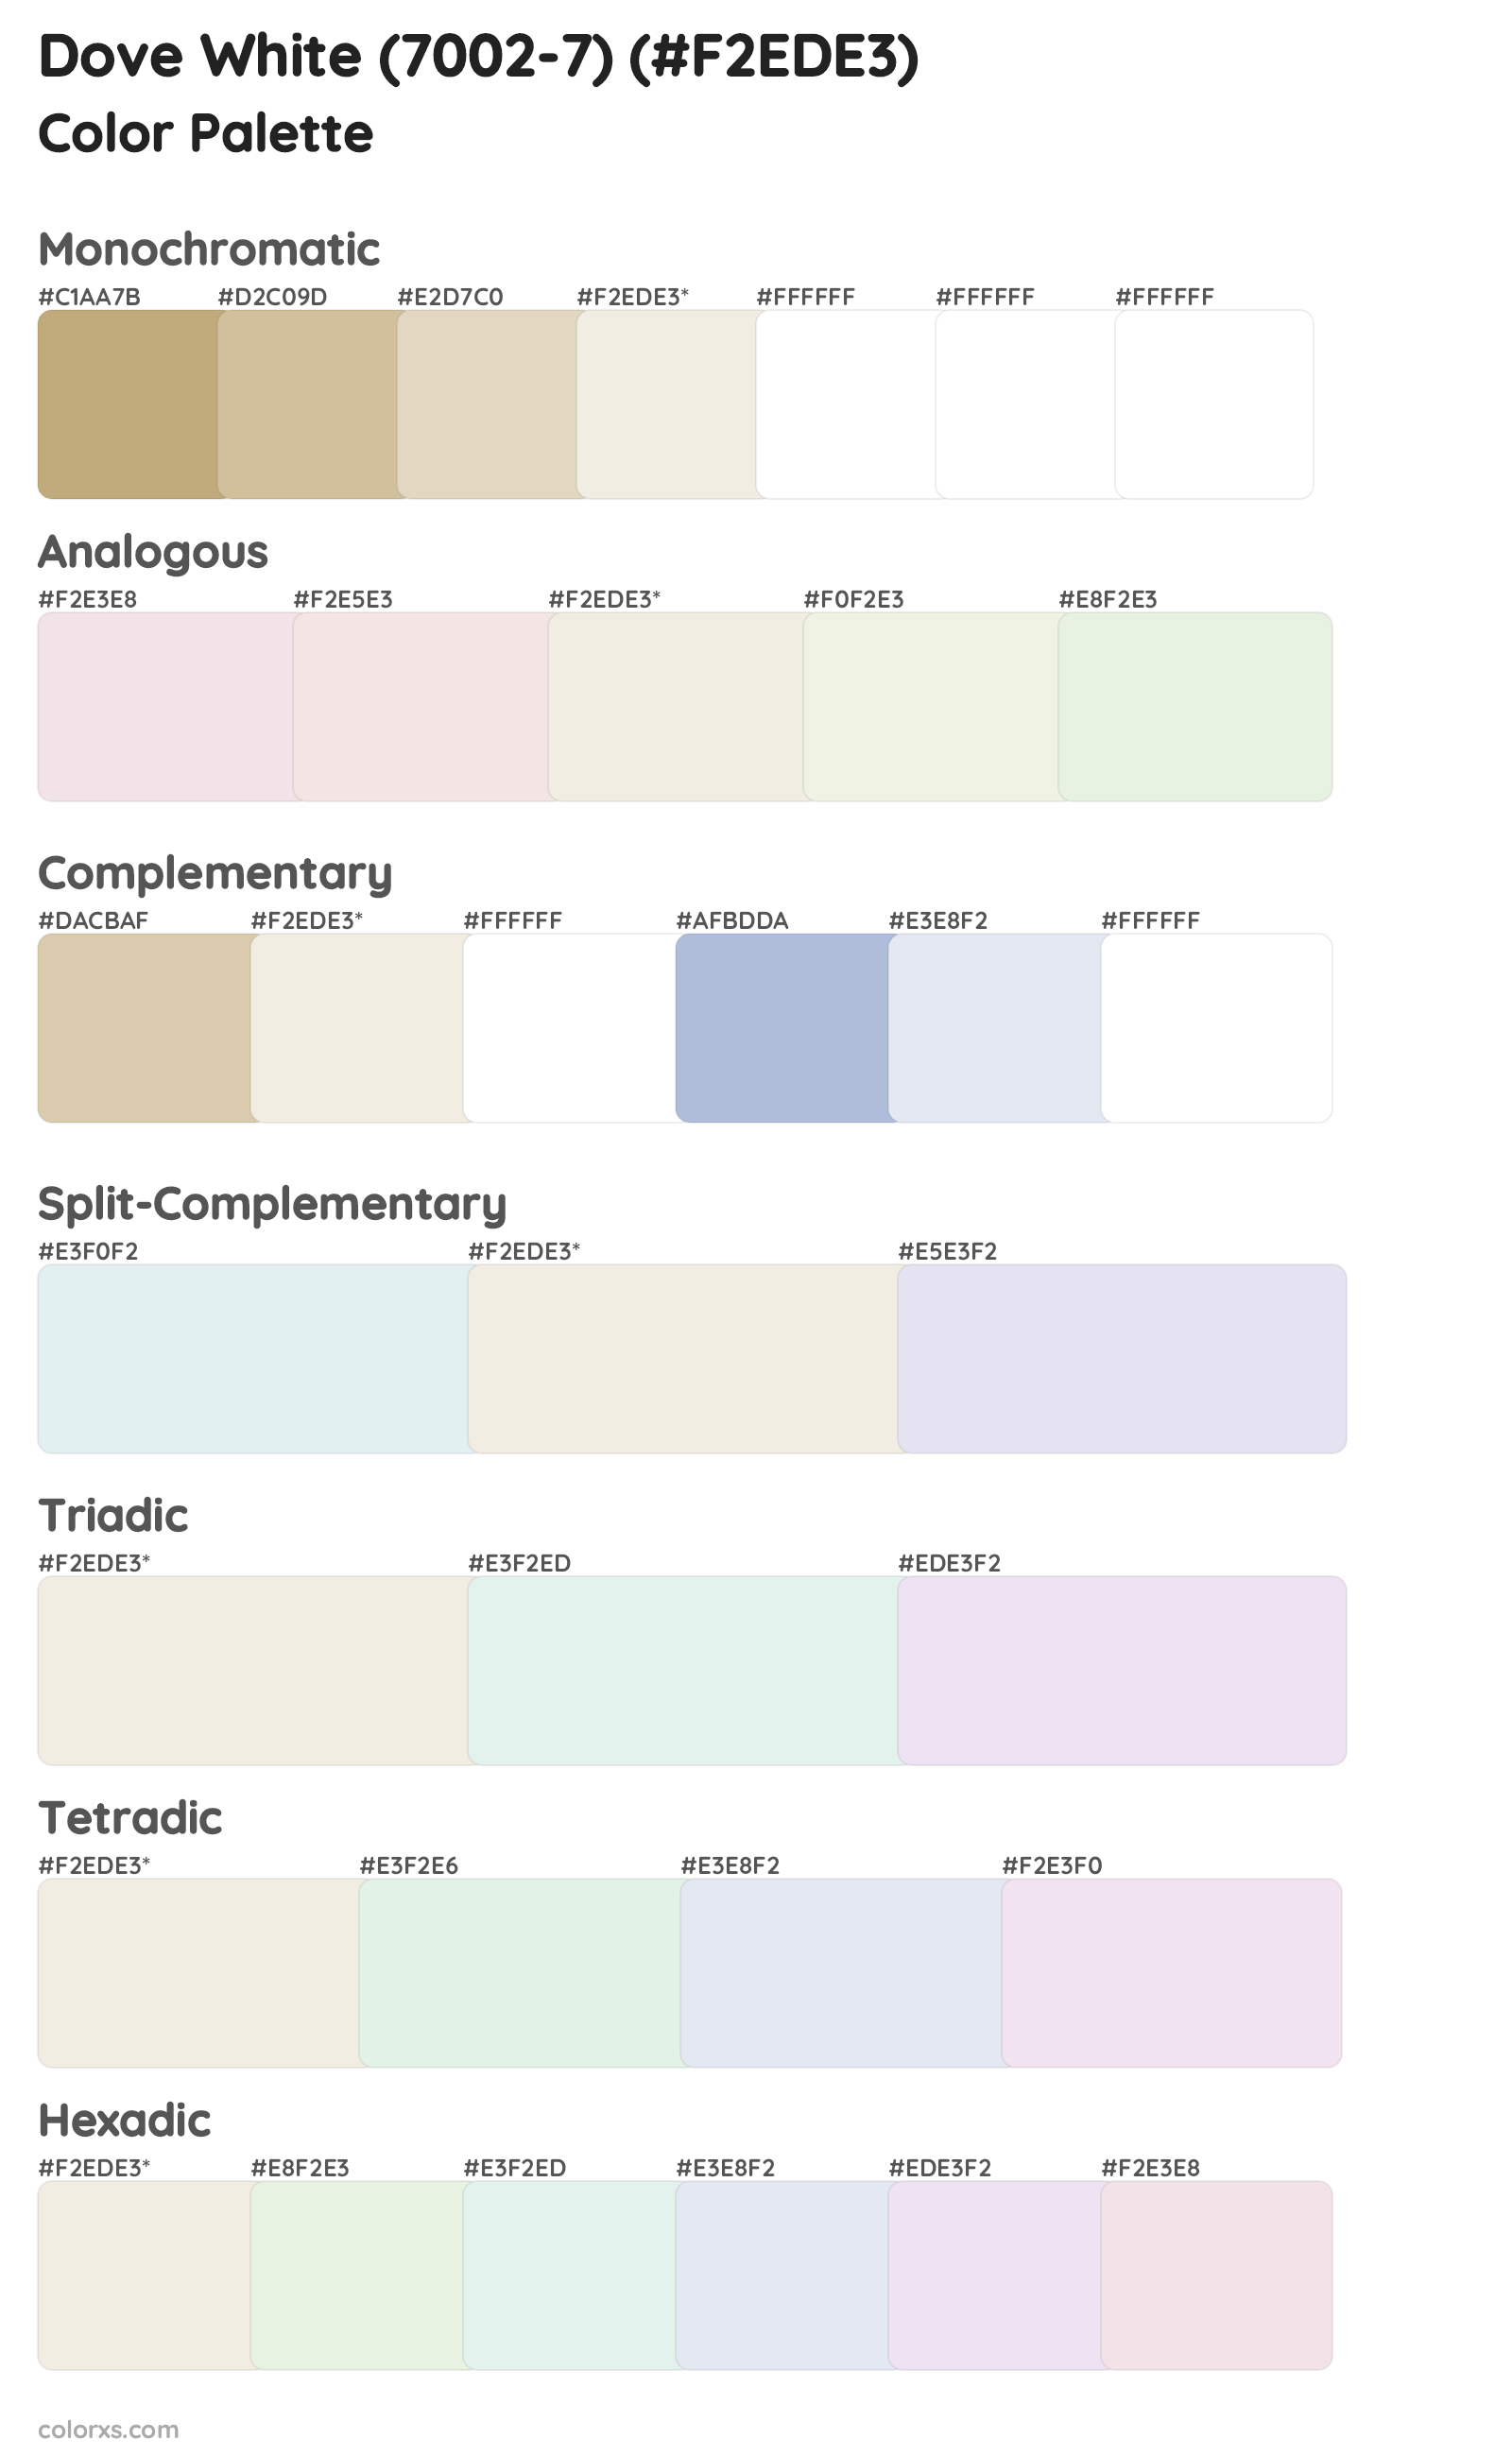 Dove White (7002-7) Color Scheme Palettes